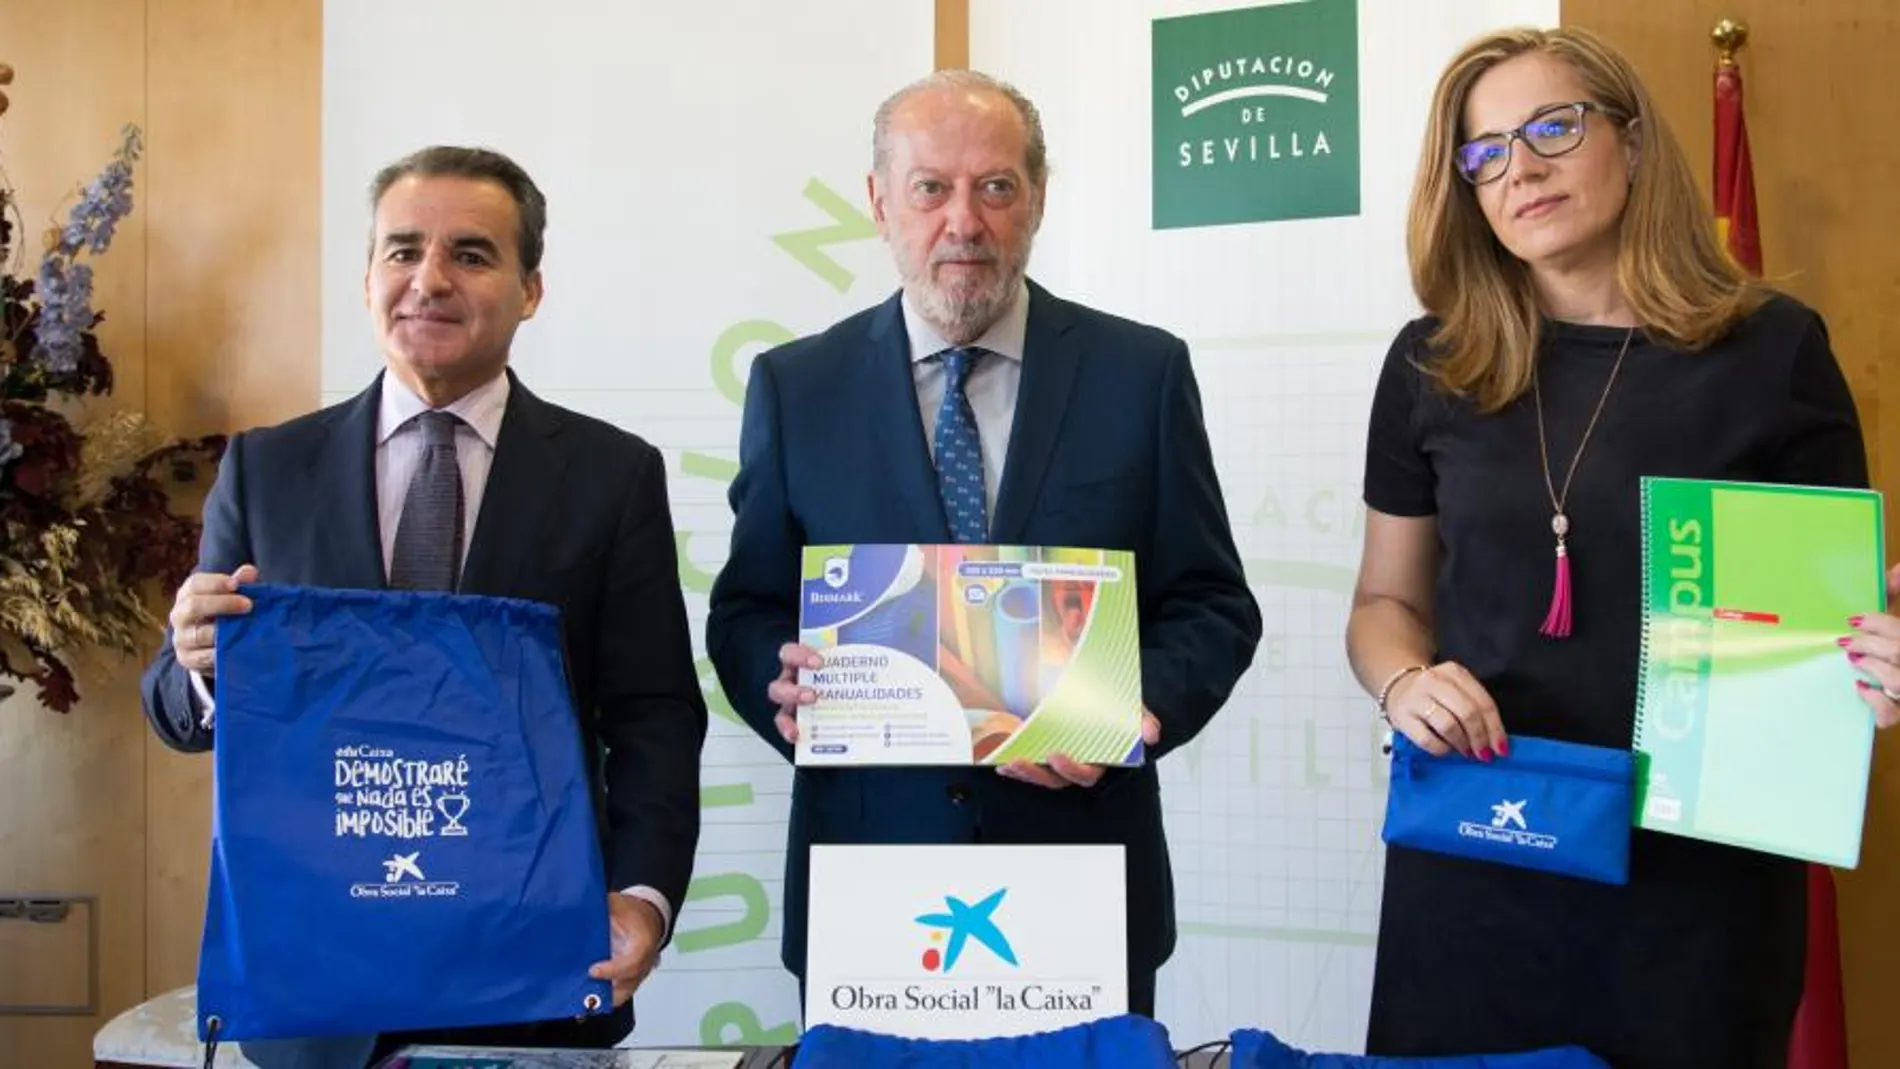 El presidente de la Diputación de Sevilla, Fernando Rodríguez Villalobos, y el director territorial de CaixaBank en Andalucía Occidental, Rafael Herrador, presentaron la campaña